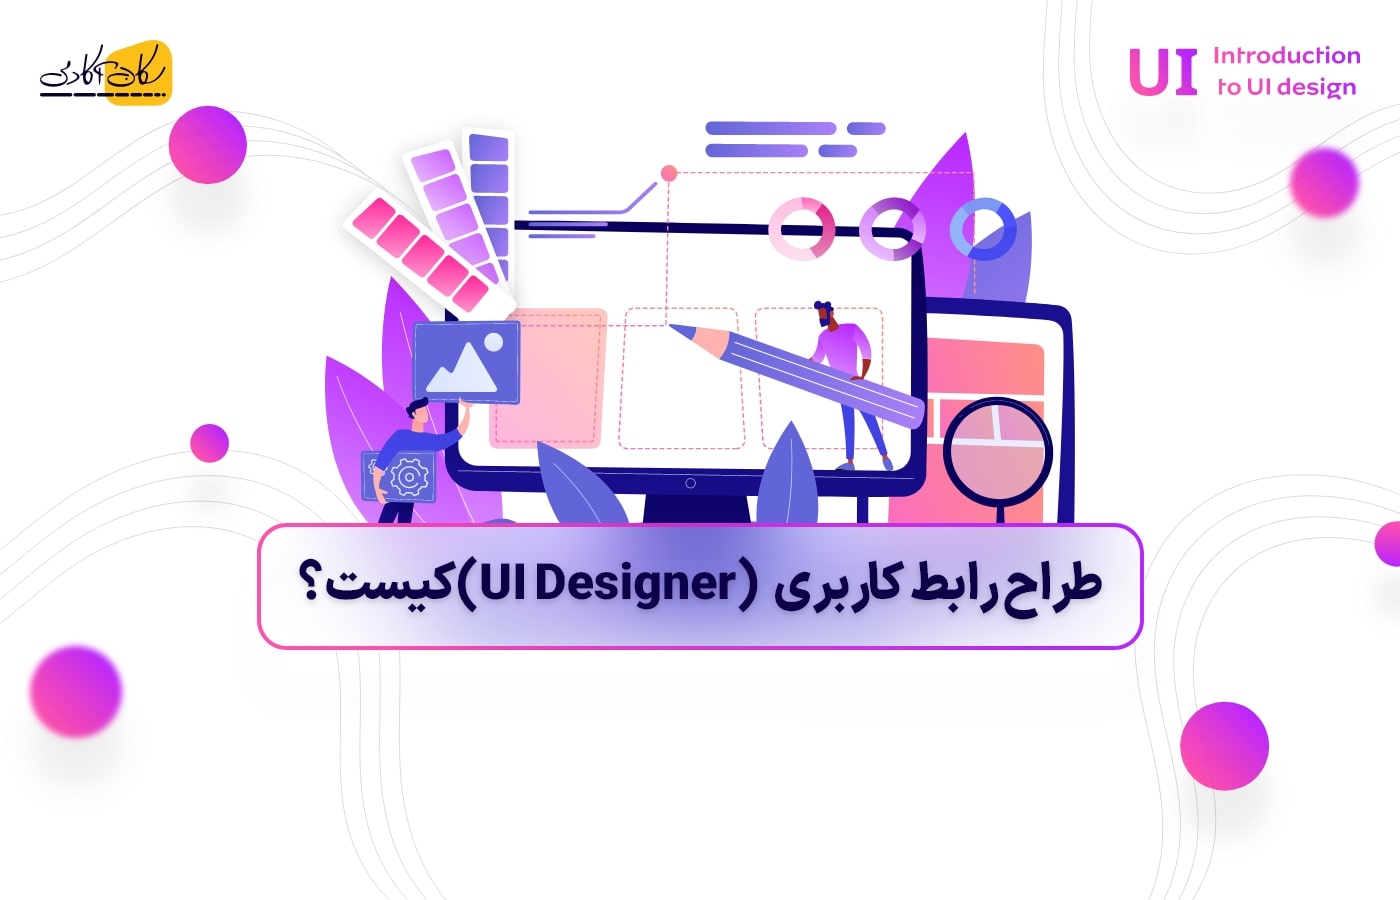 طراح رابط کاربری (UI Designer) کیست؟